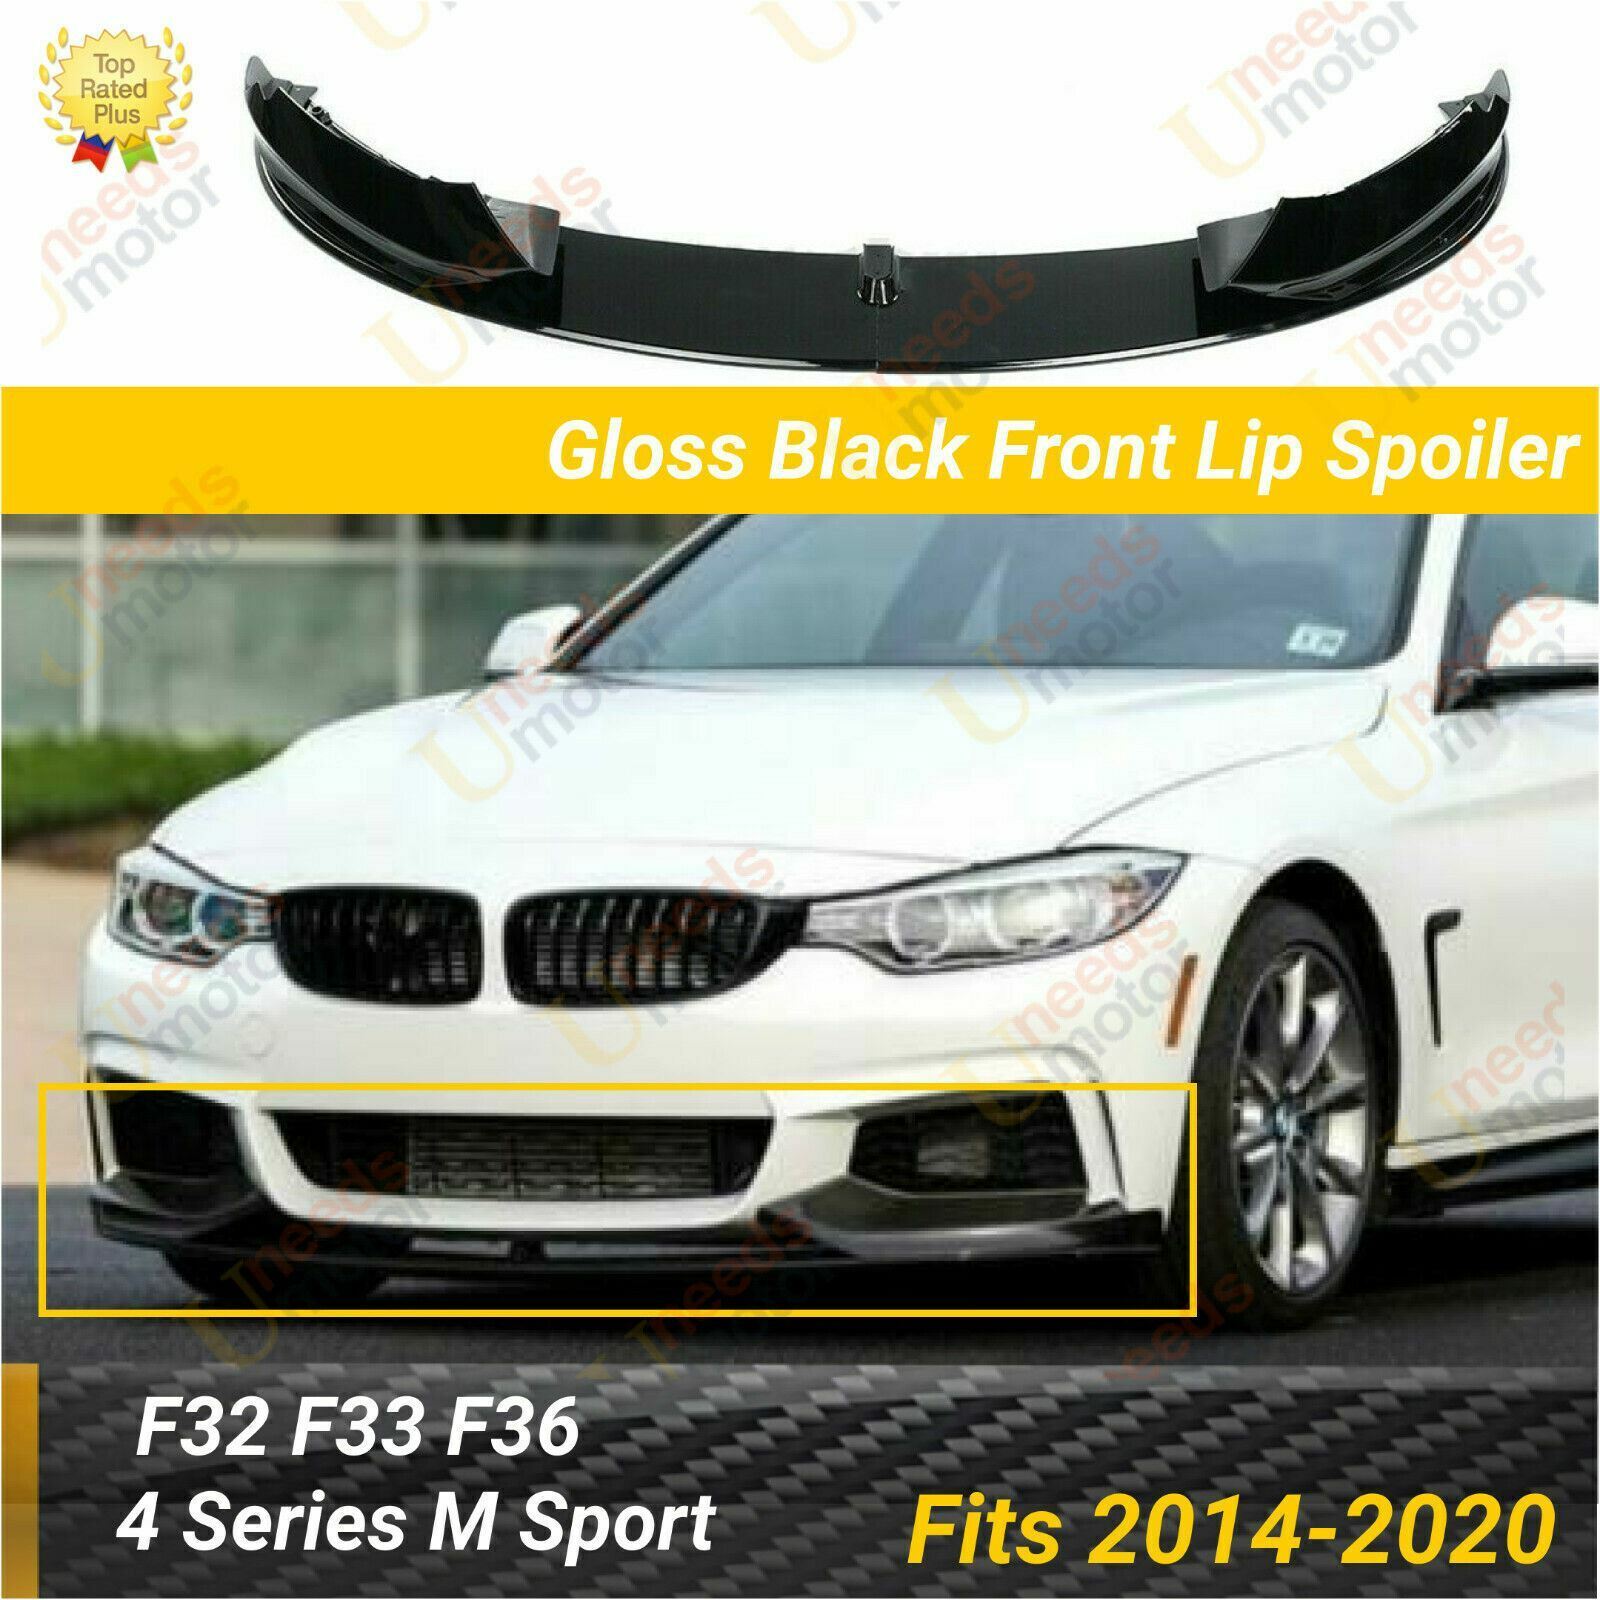 Fits BMW 2014-2020 F32 F33 F36 4 Series M Sport Glossy Black Front Lip Spoiler